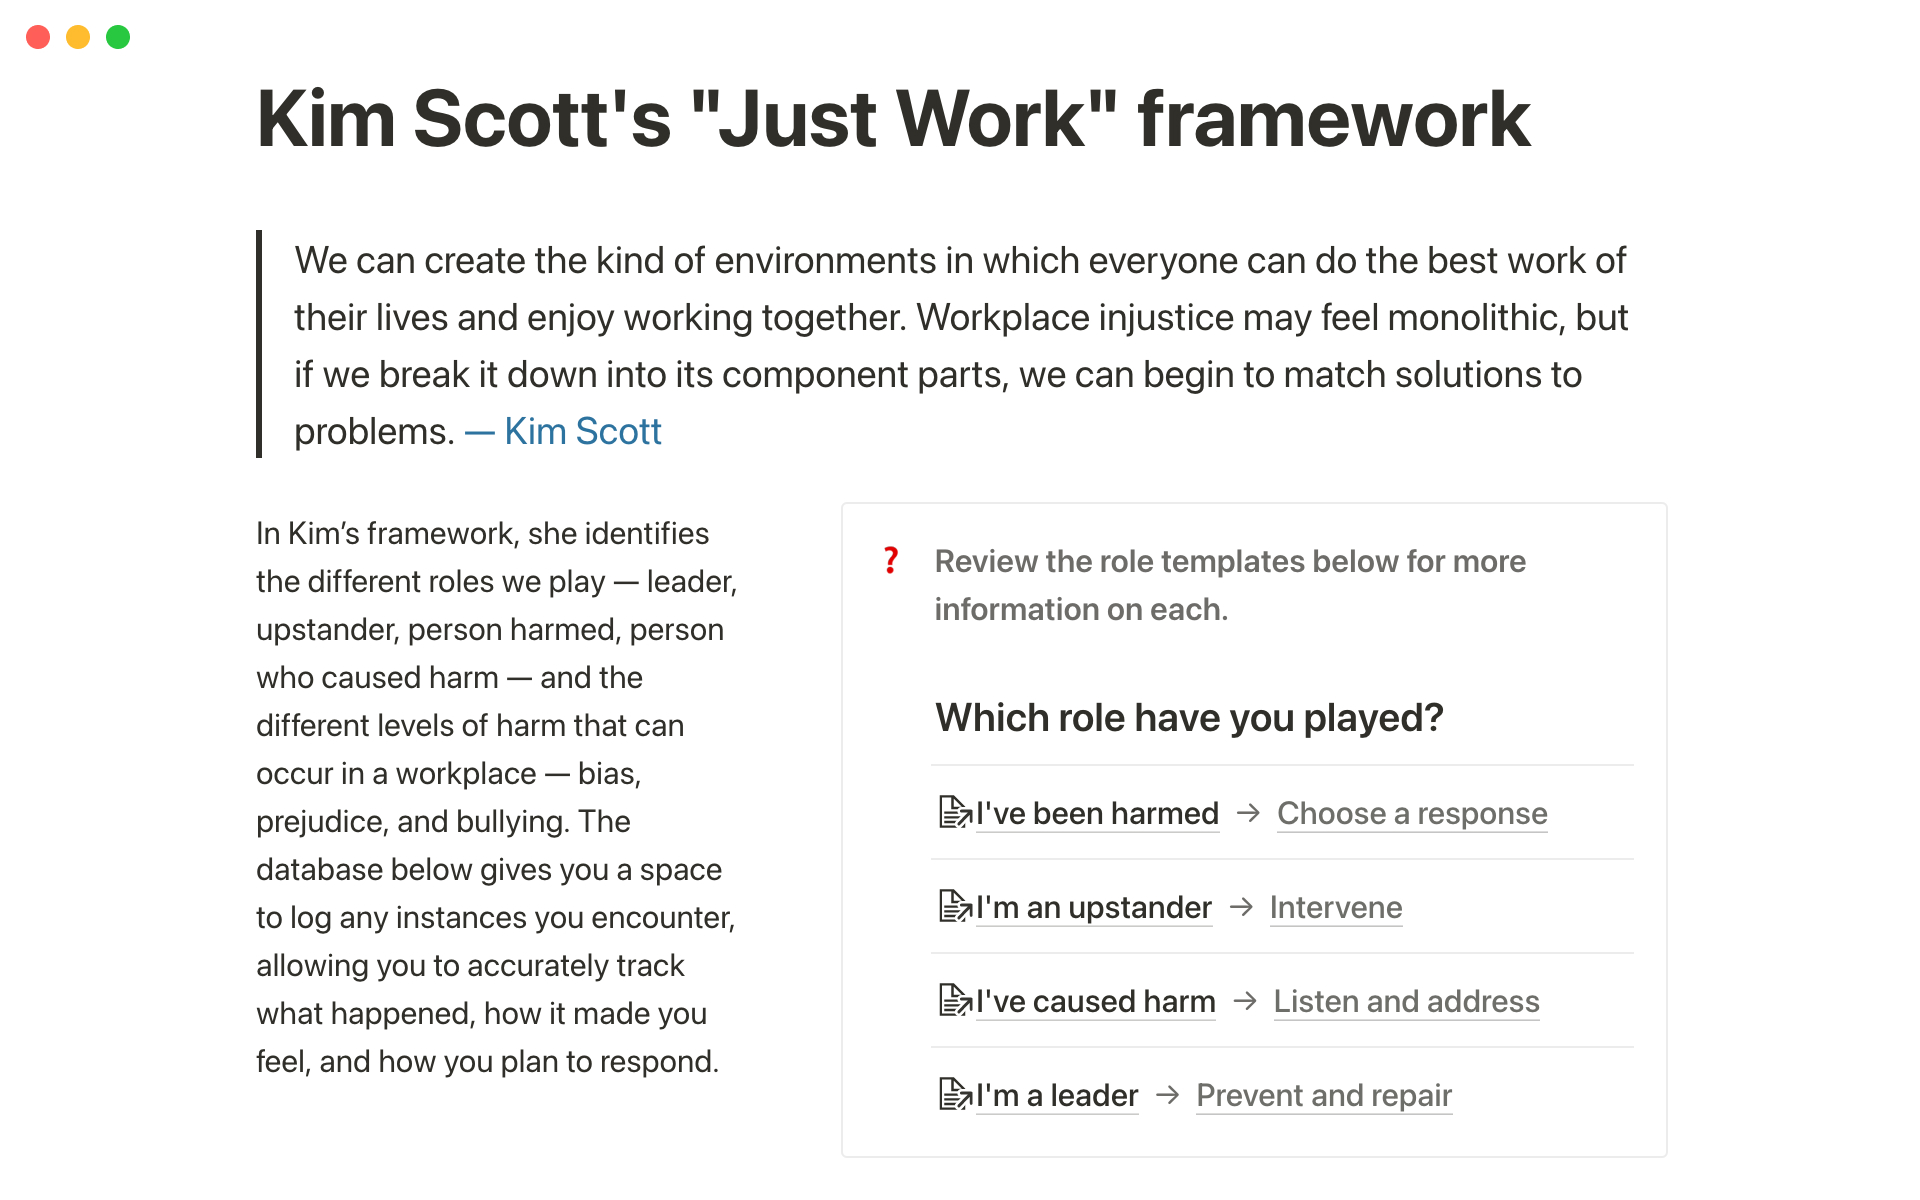 Uma prévia do modelo para Kim Scott's "Just Work" framework